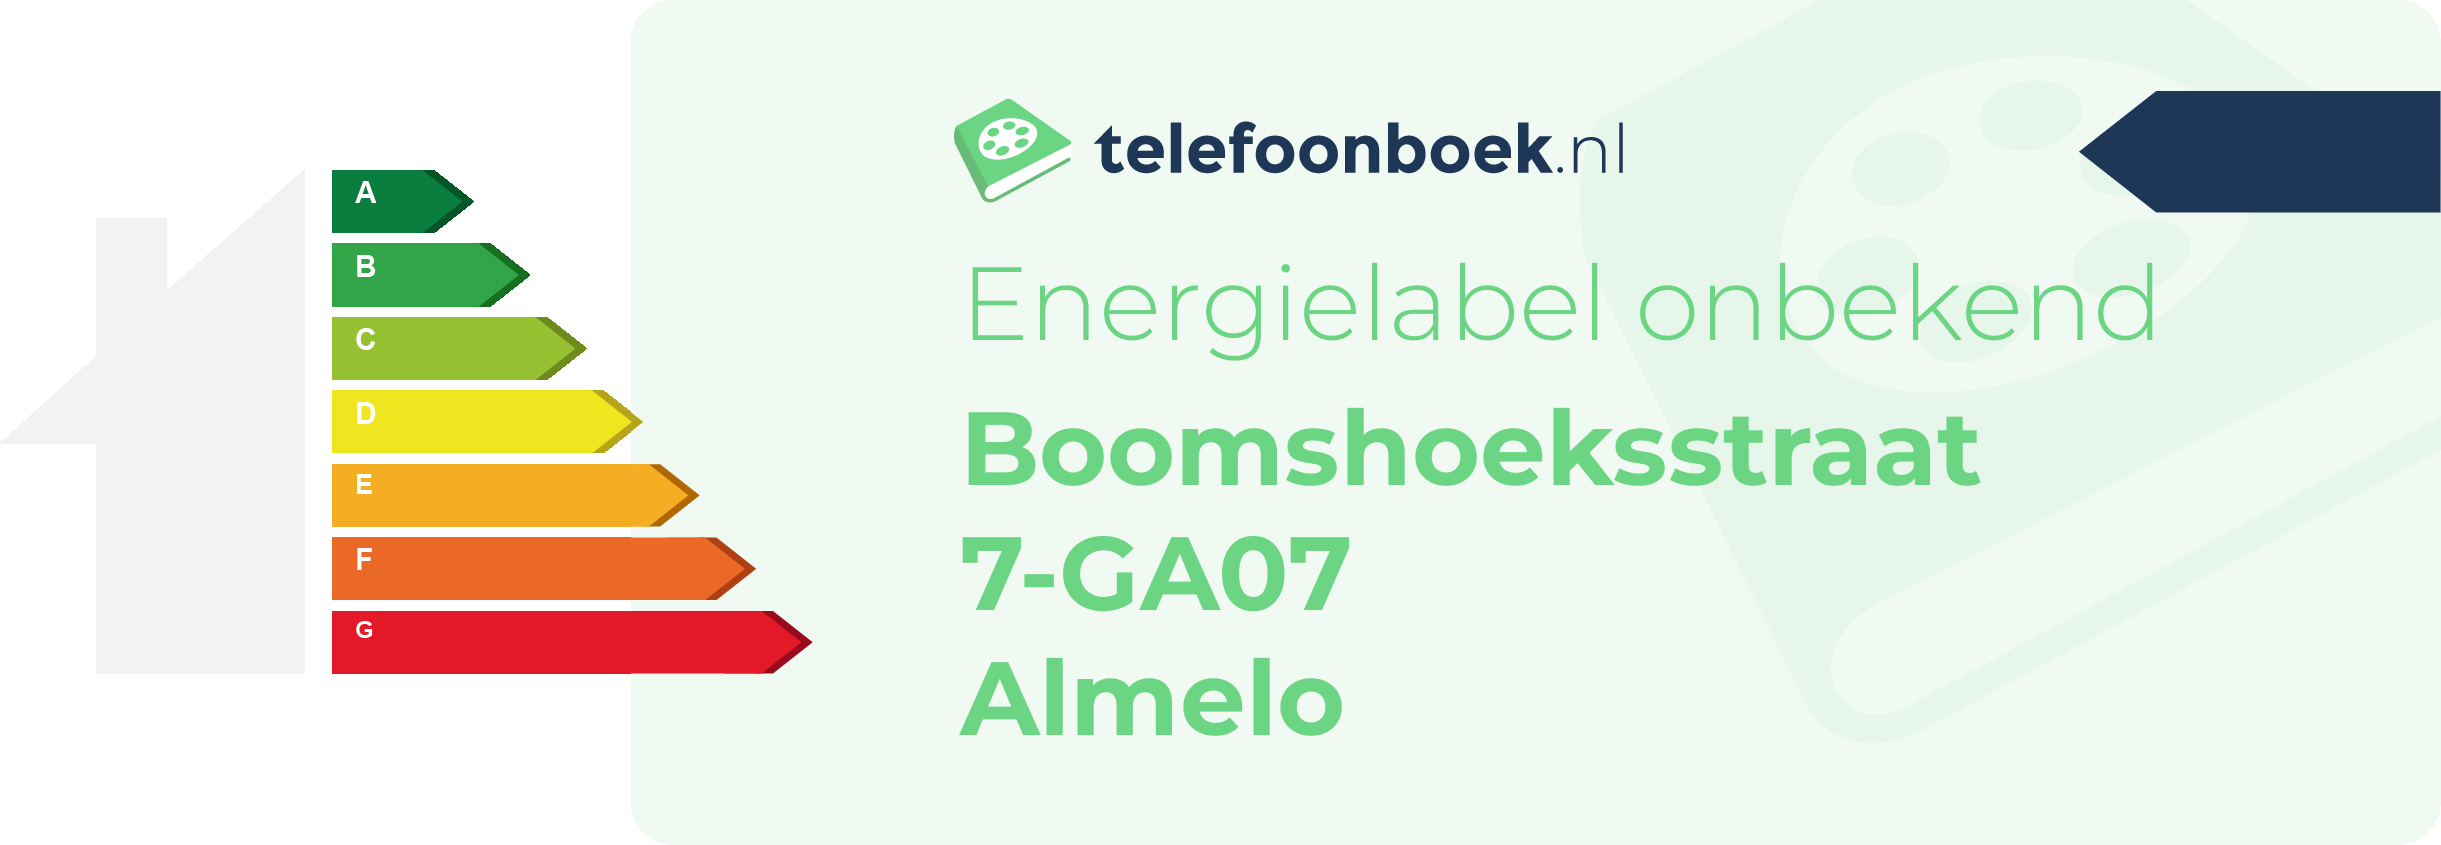 Energielabel Boomshoeksstraat 7-GA07 Almelo